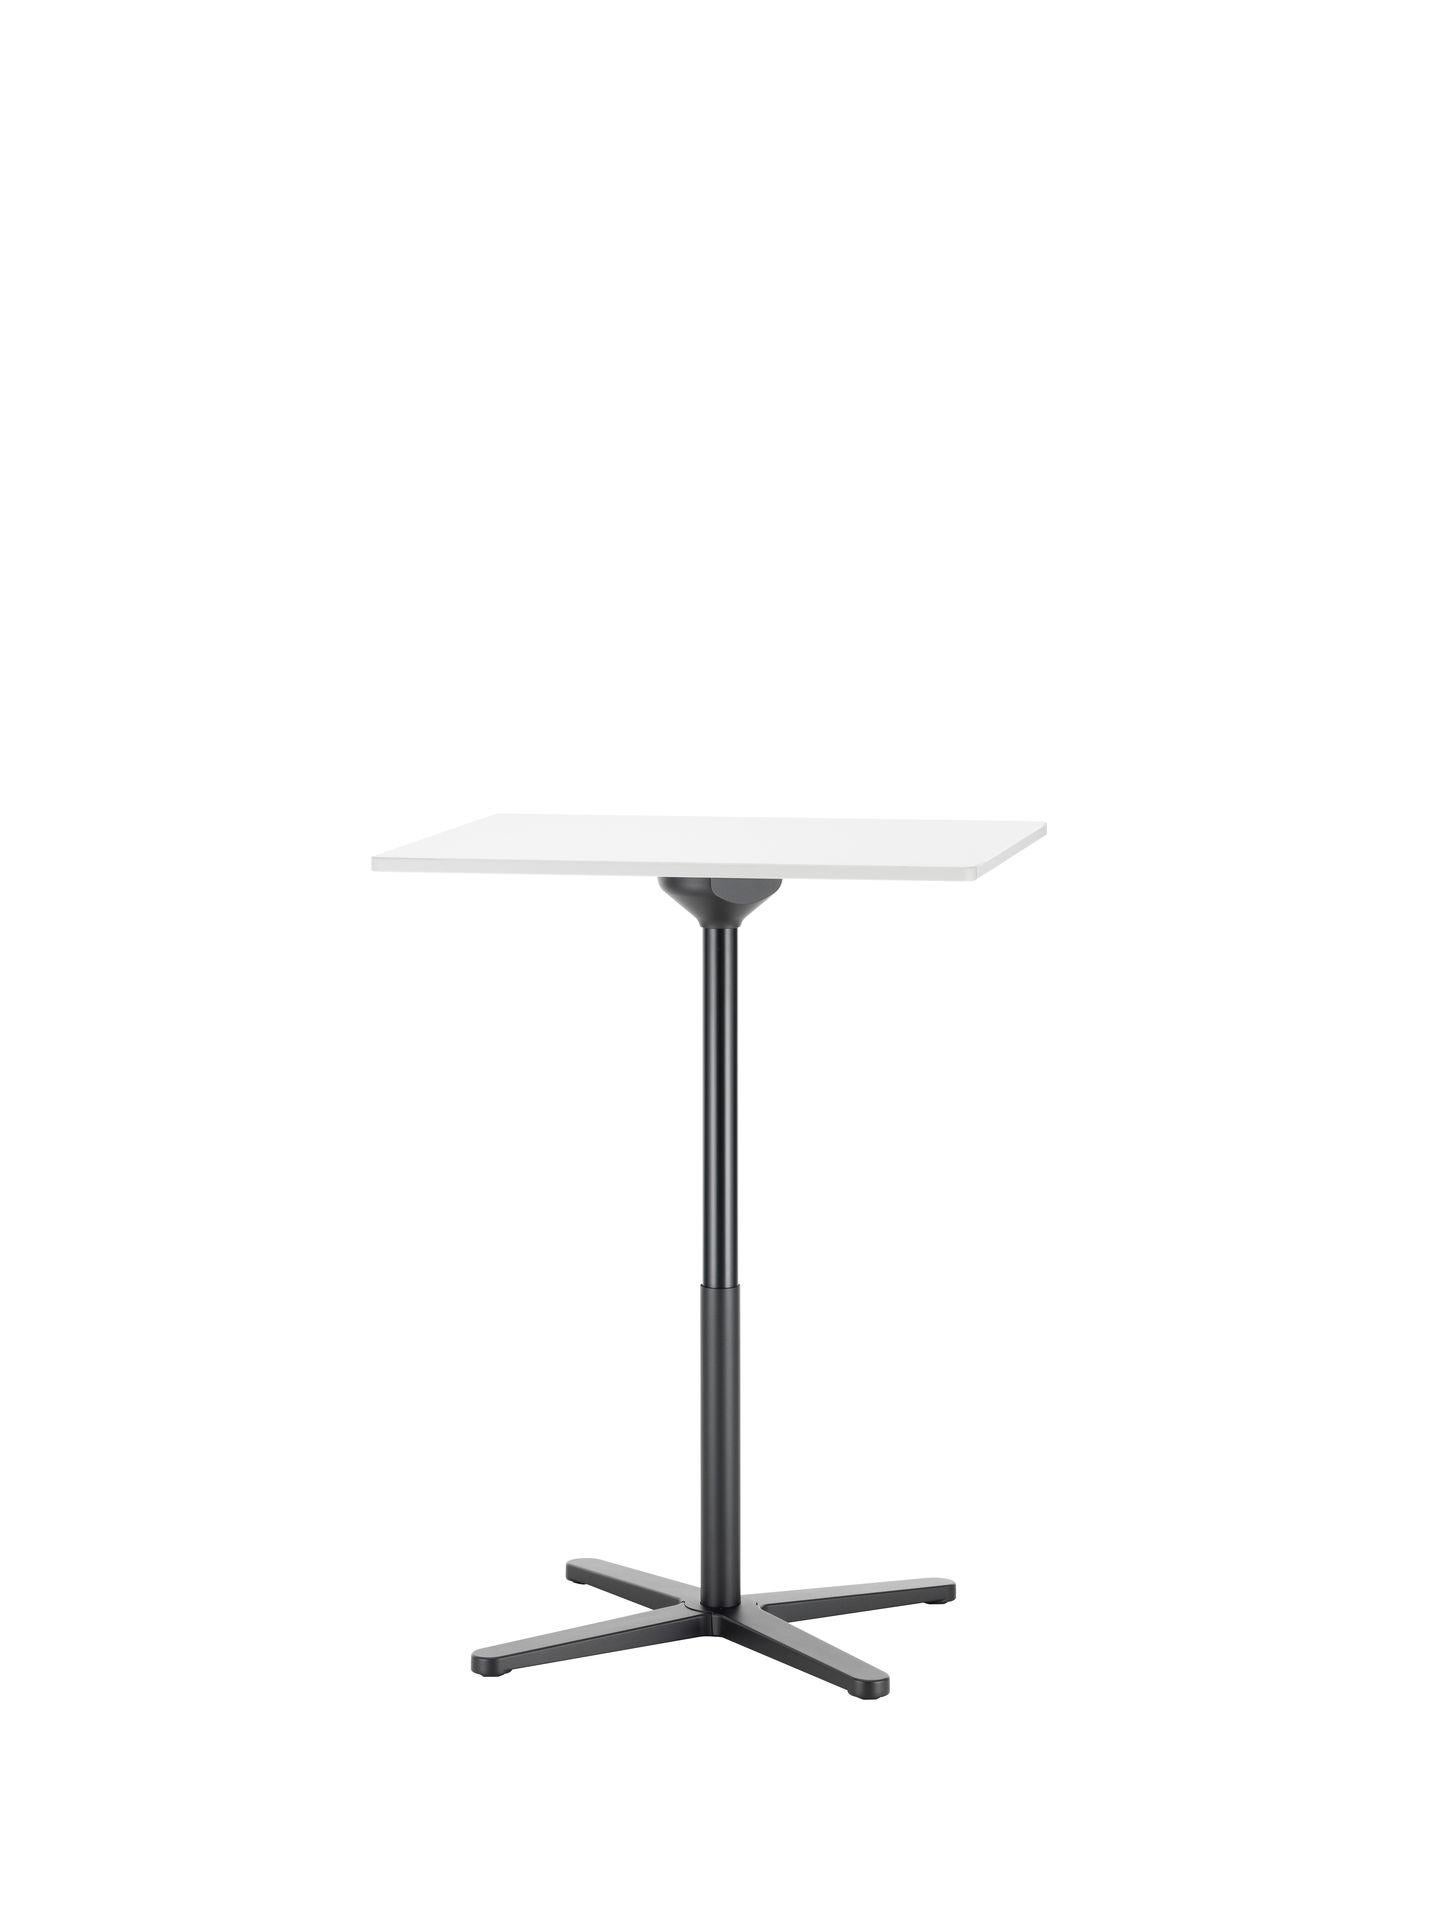 Mid-Century Modern Jasper Morrison Super Fold Table High, White Melamine and Steel by Vitra